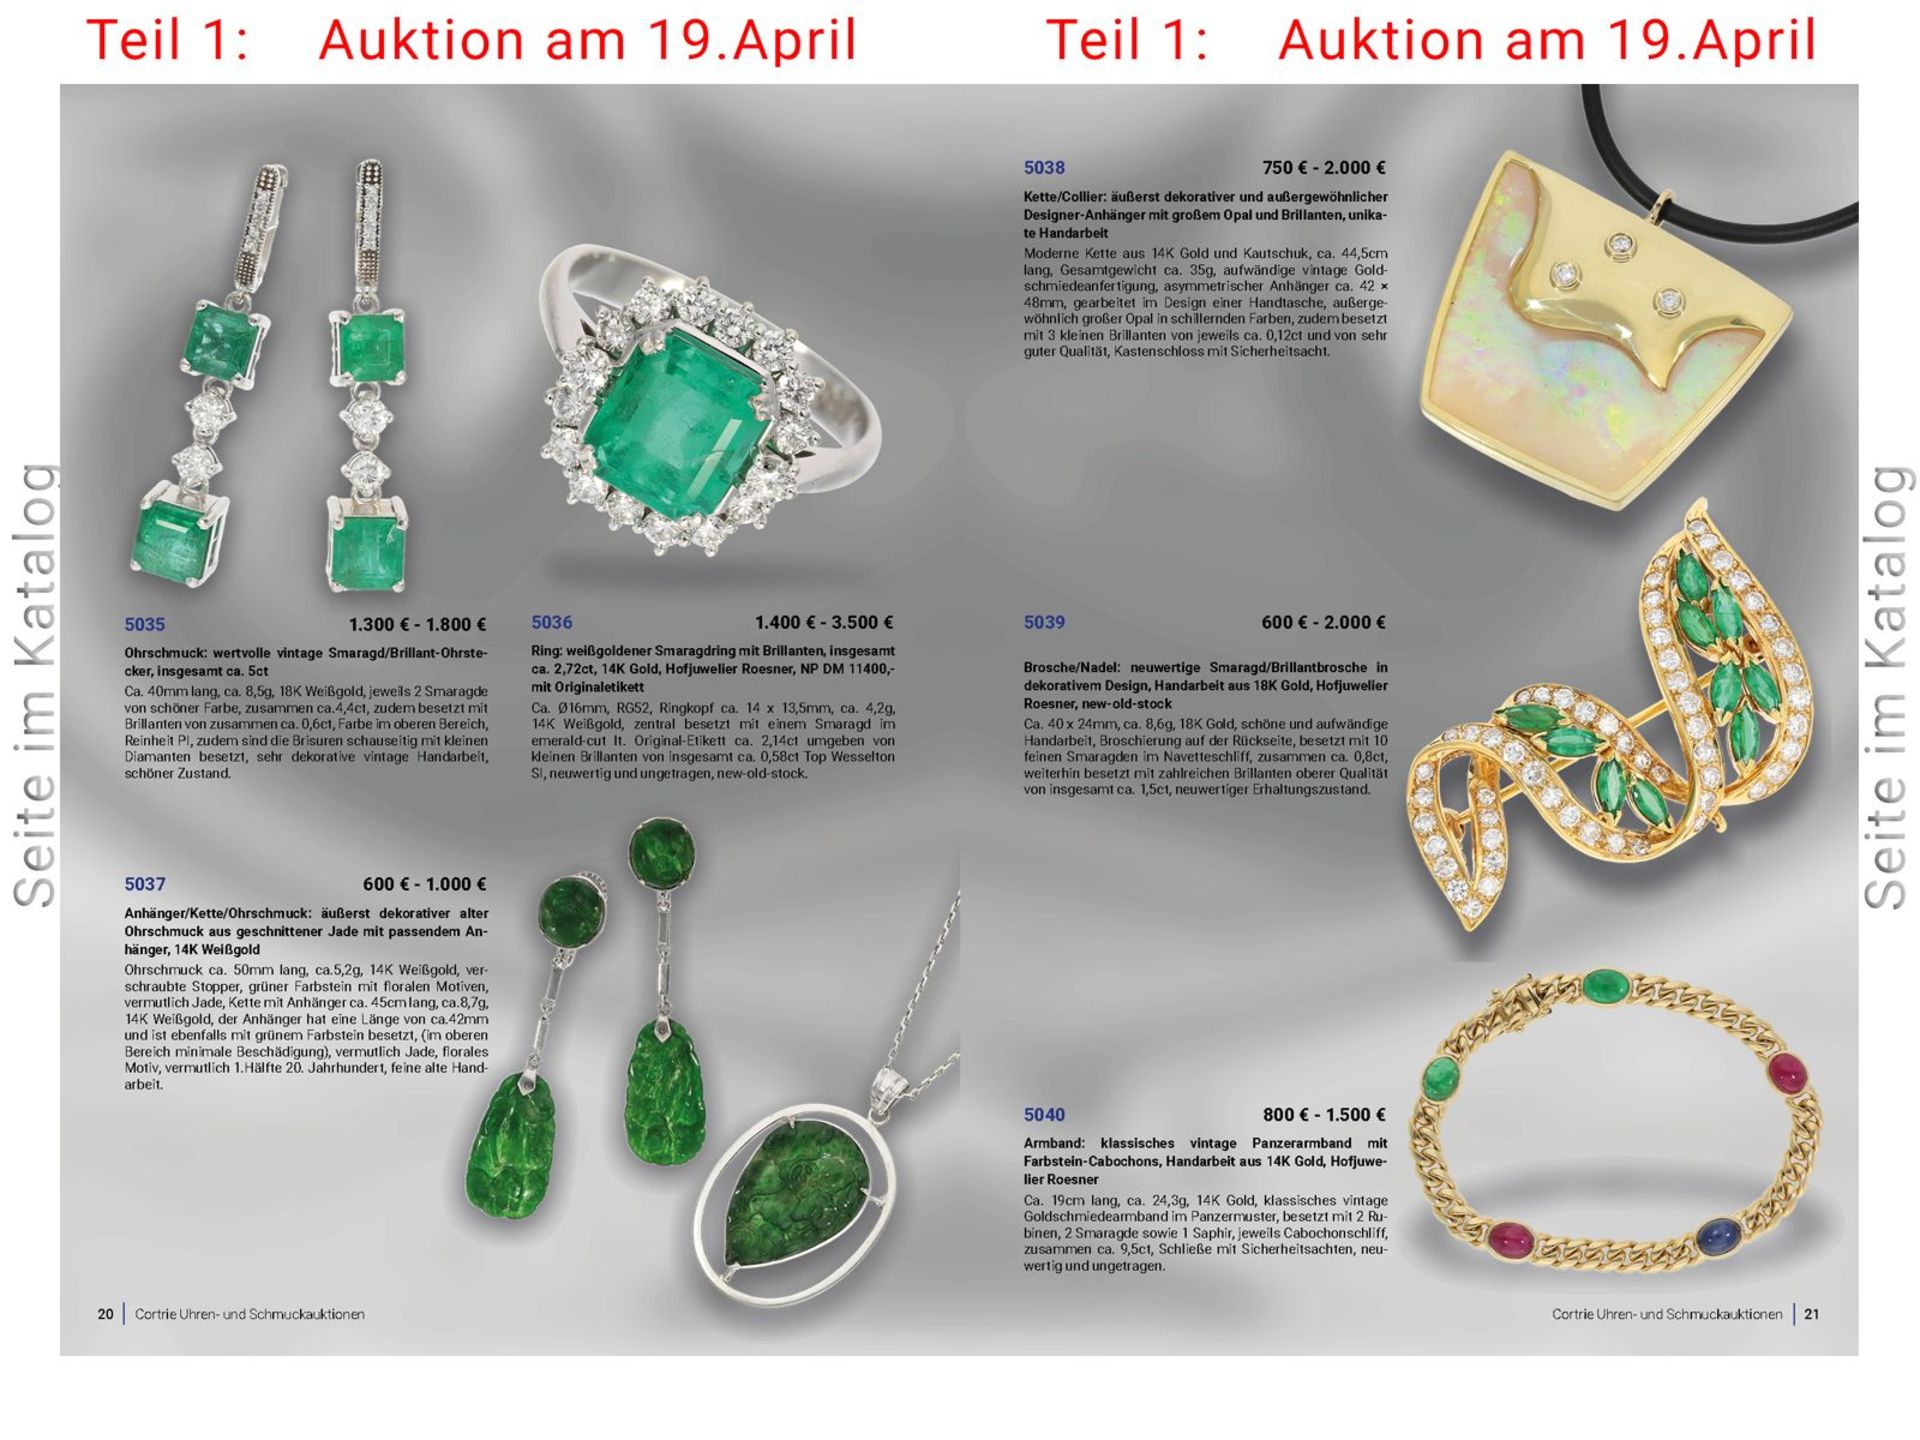 Brosche/Nadel: neuwertige Smaragd/Brillantbrosche in dekorativem Design, Handarbeit aus 18K Gold, - Bild 4 aus 4